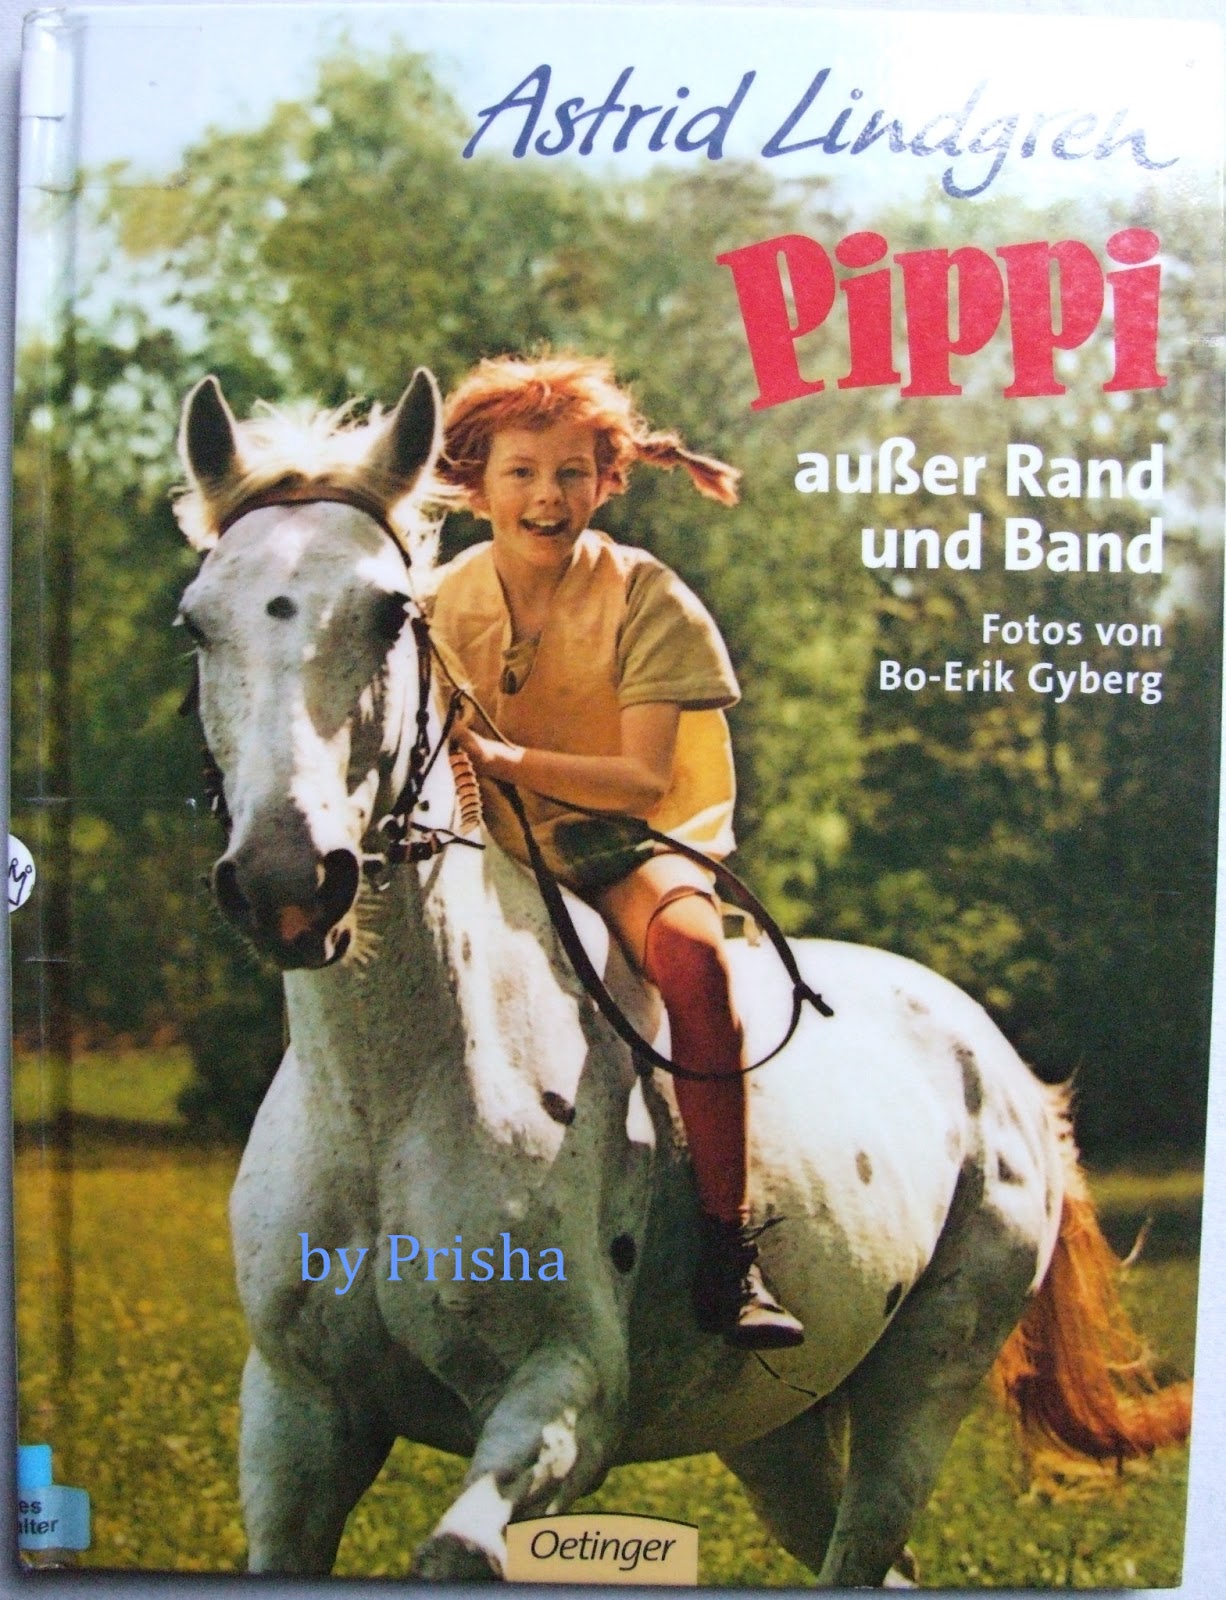 Prishavista: "Pippi außer Rand und Band" von Astrid Lindgren [Rezi]